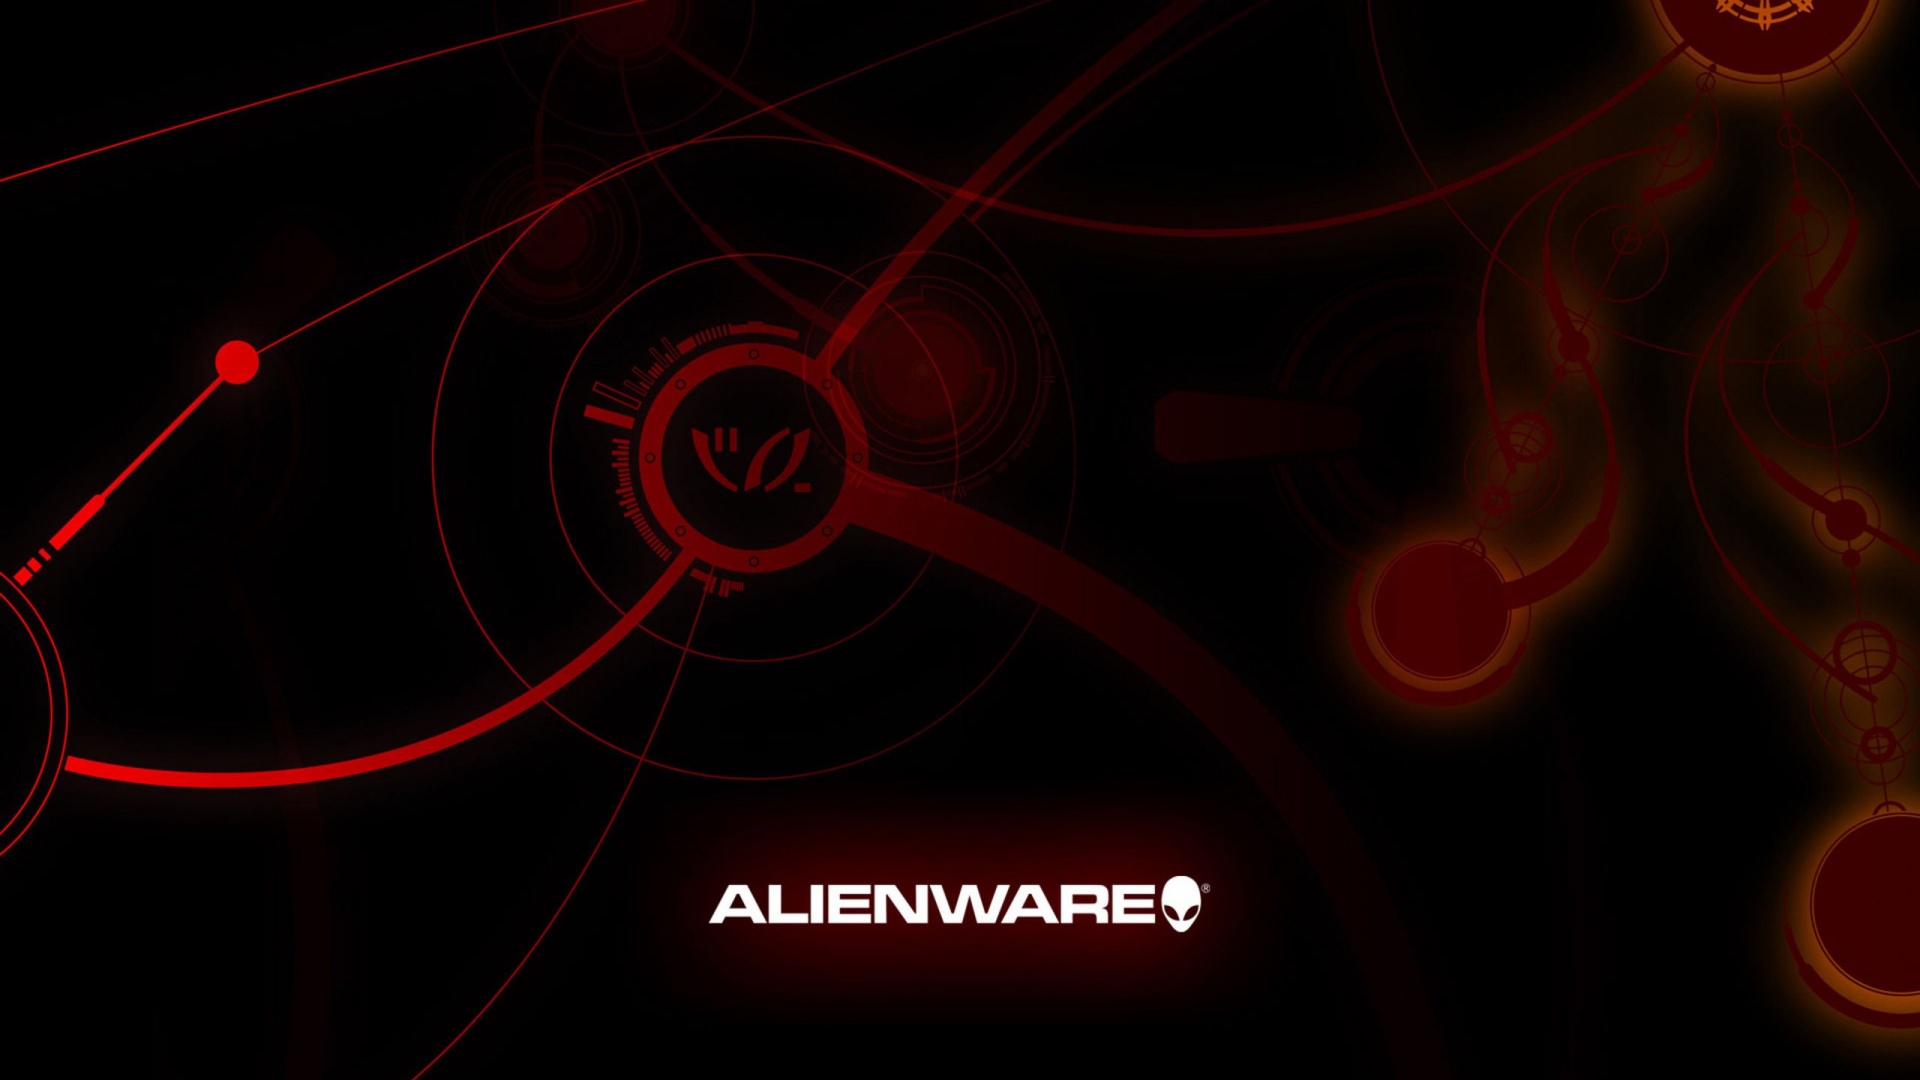 Alienware Brand Computer